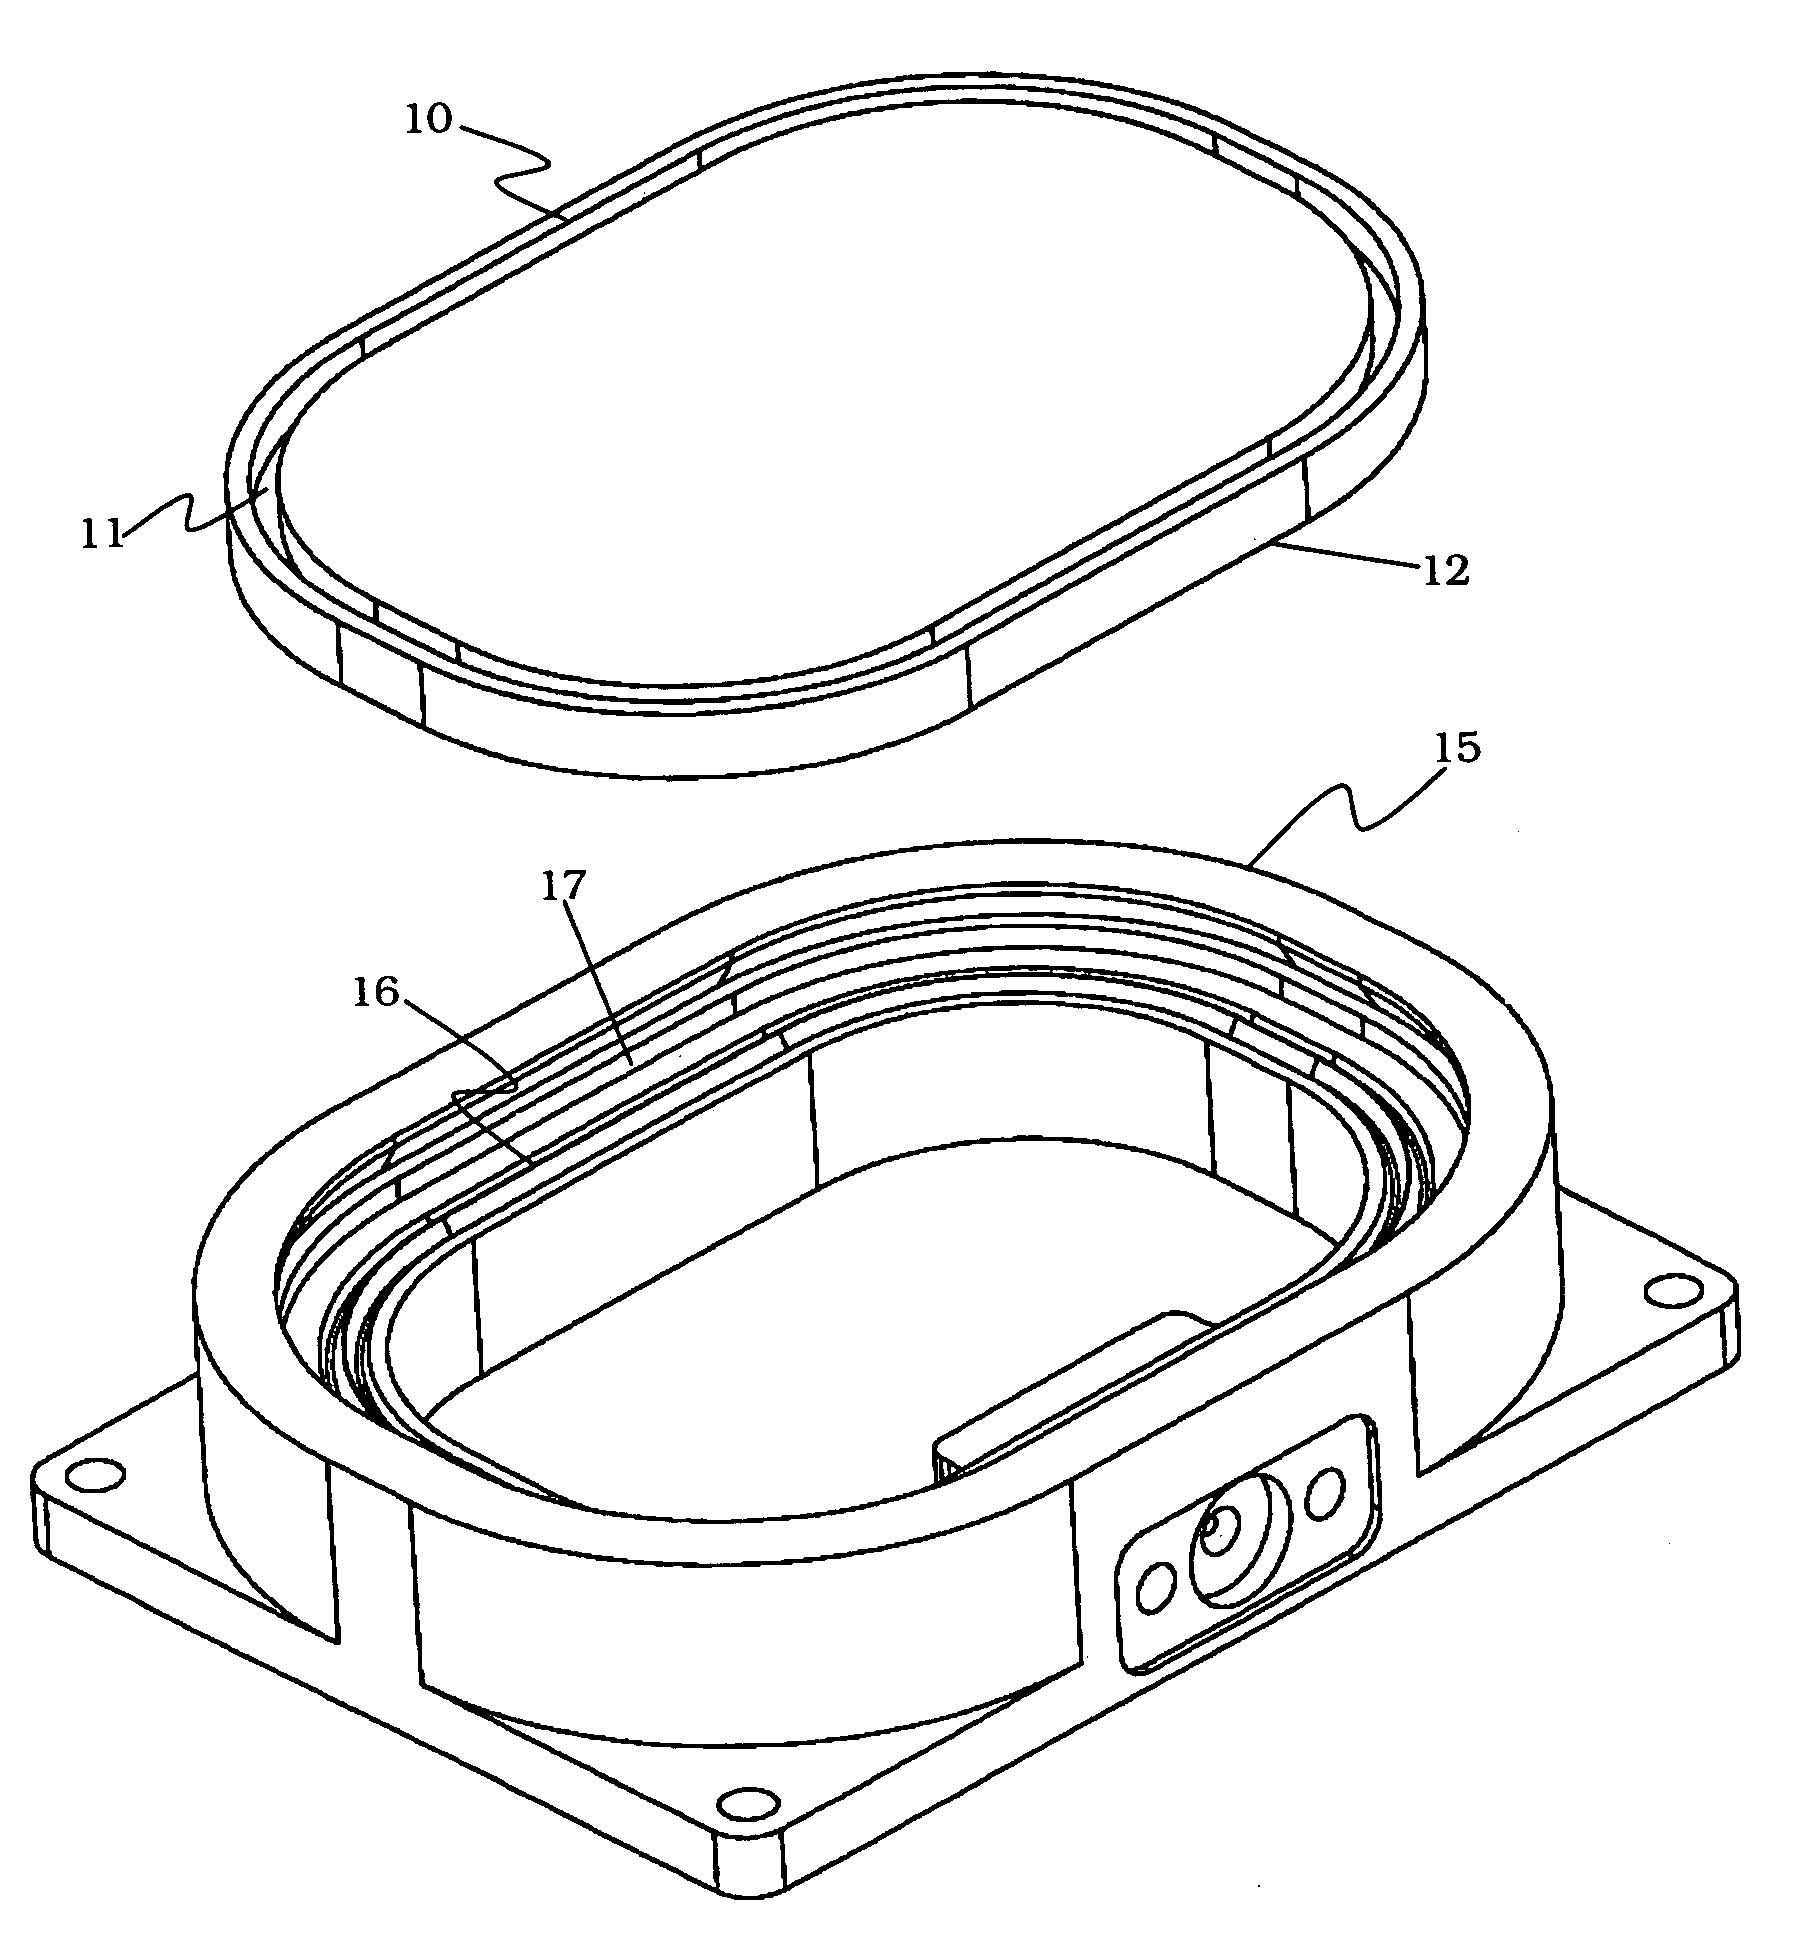 Hermetic lid seal by metal pressing for fiber optic module